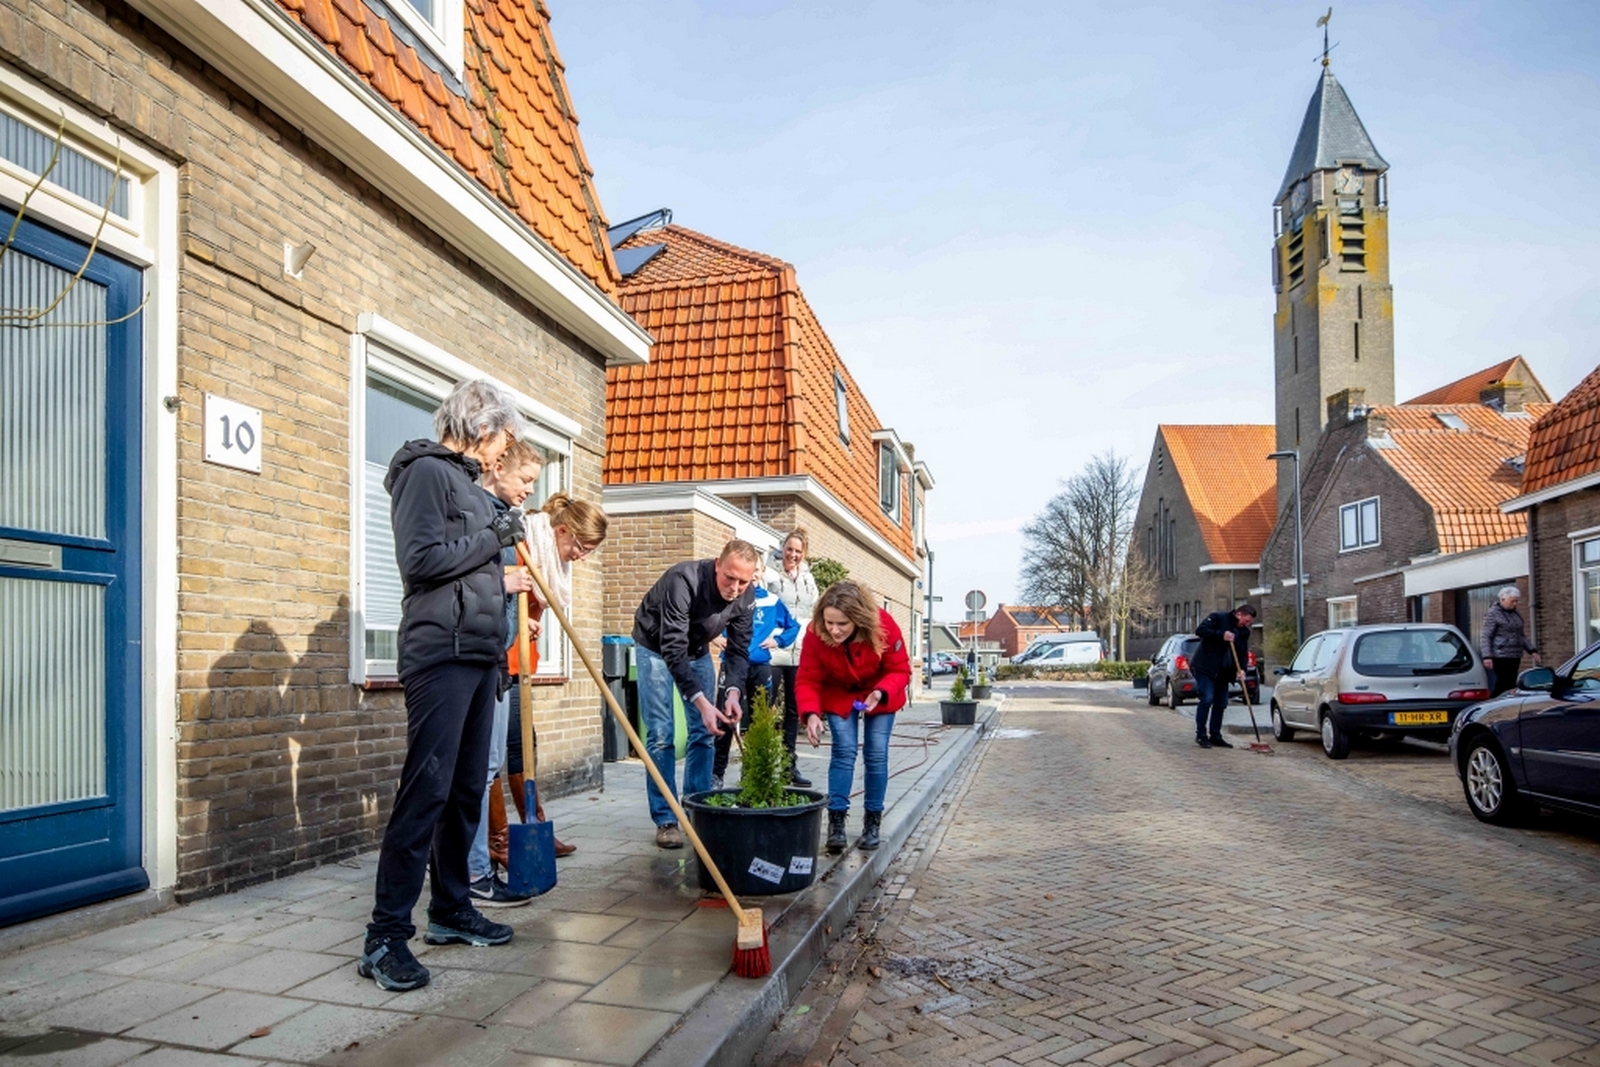 Gratis planten voor stoeptuinen in Kampen en omliggende dorpen